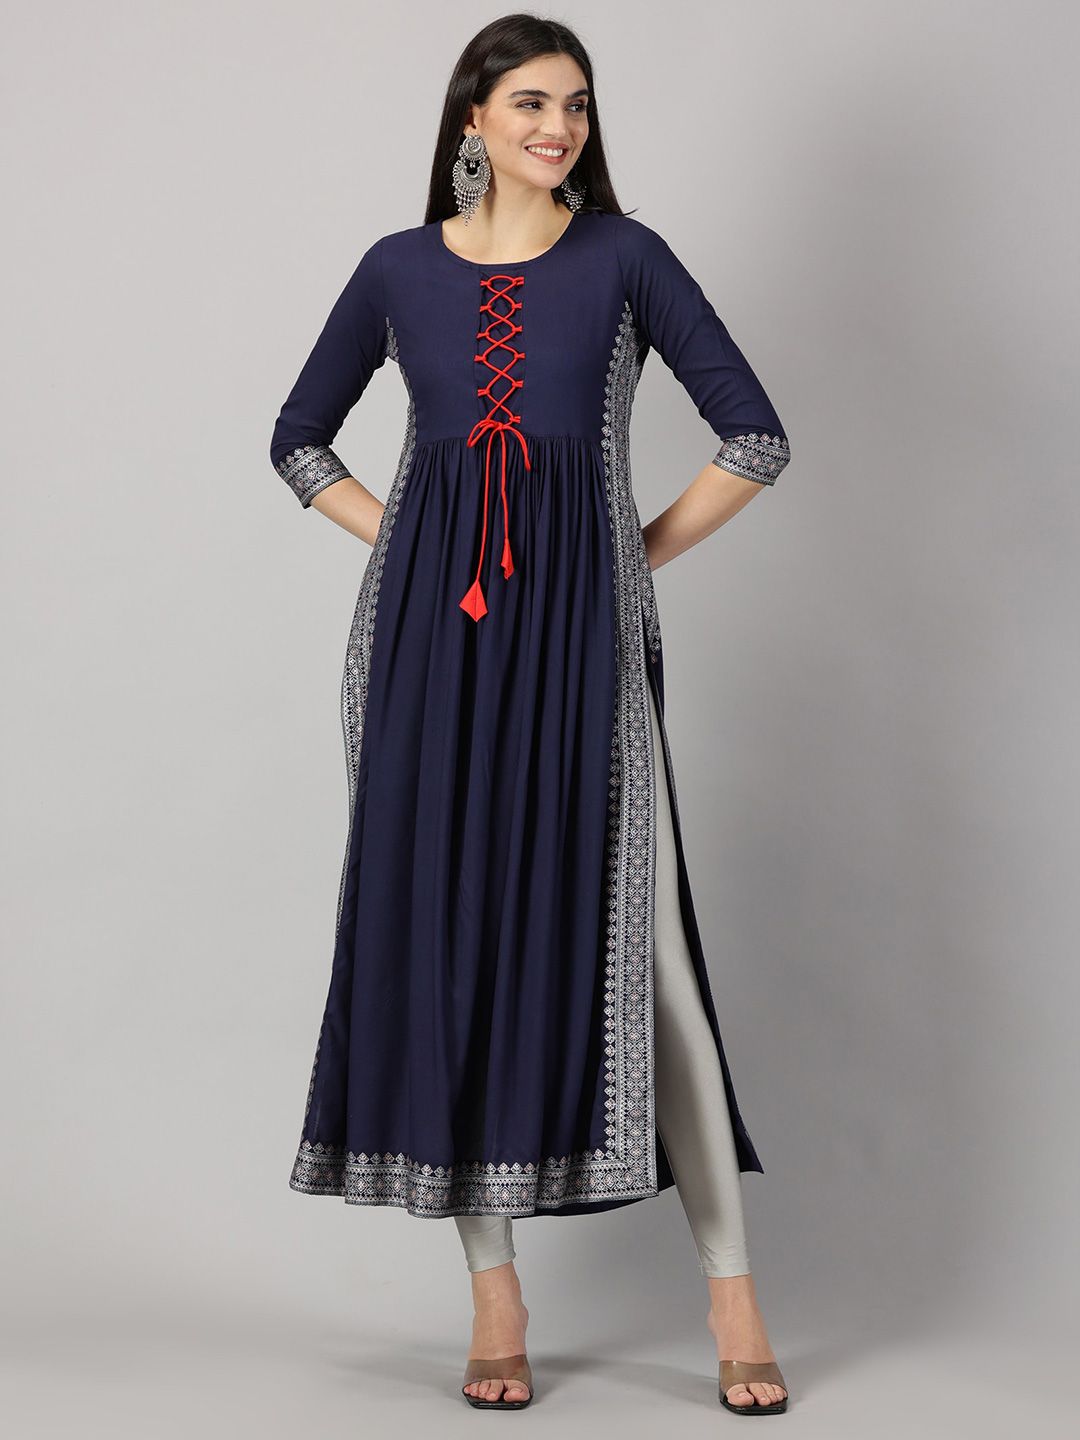 HEERAJI Print Maxi Dress Price in India